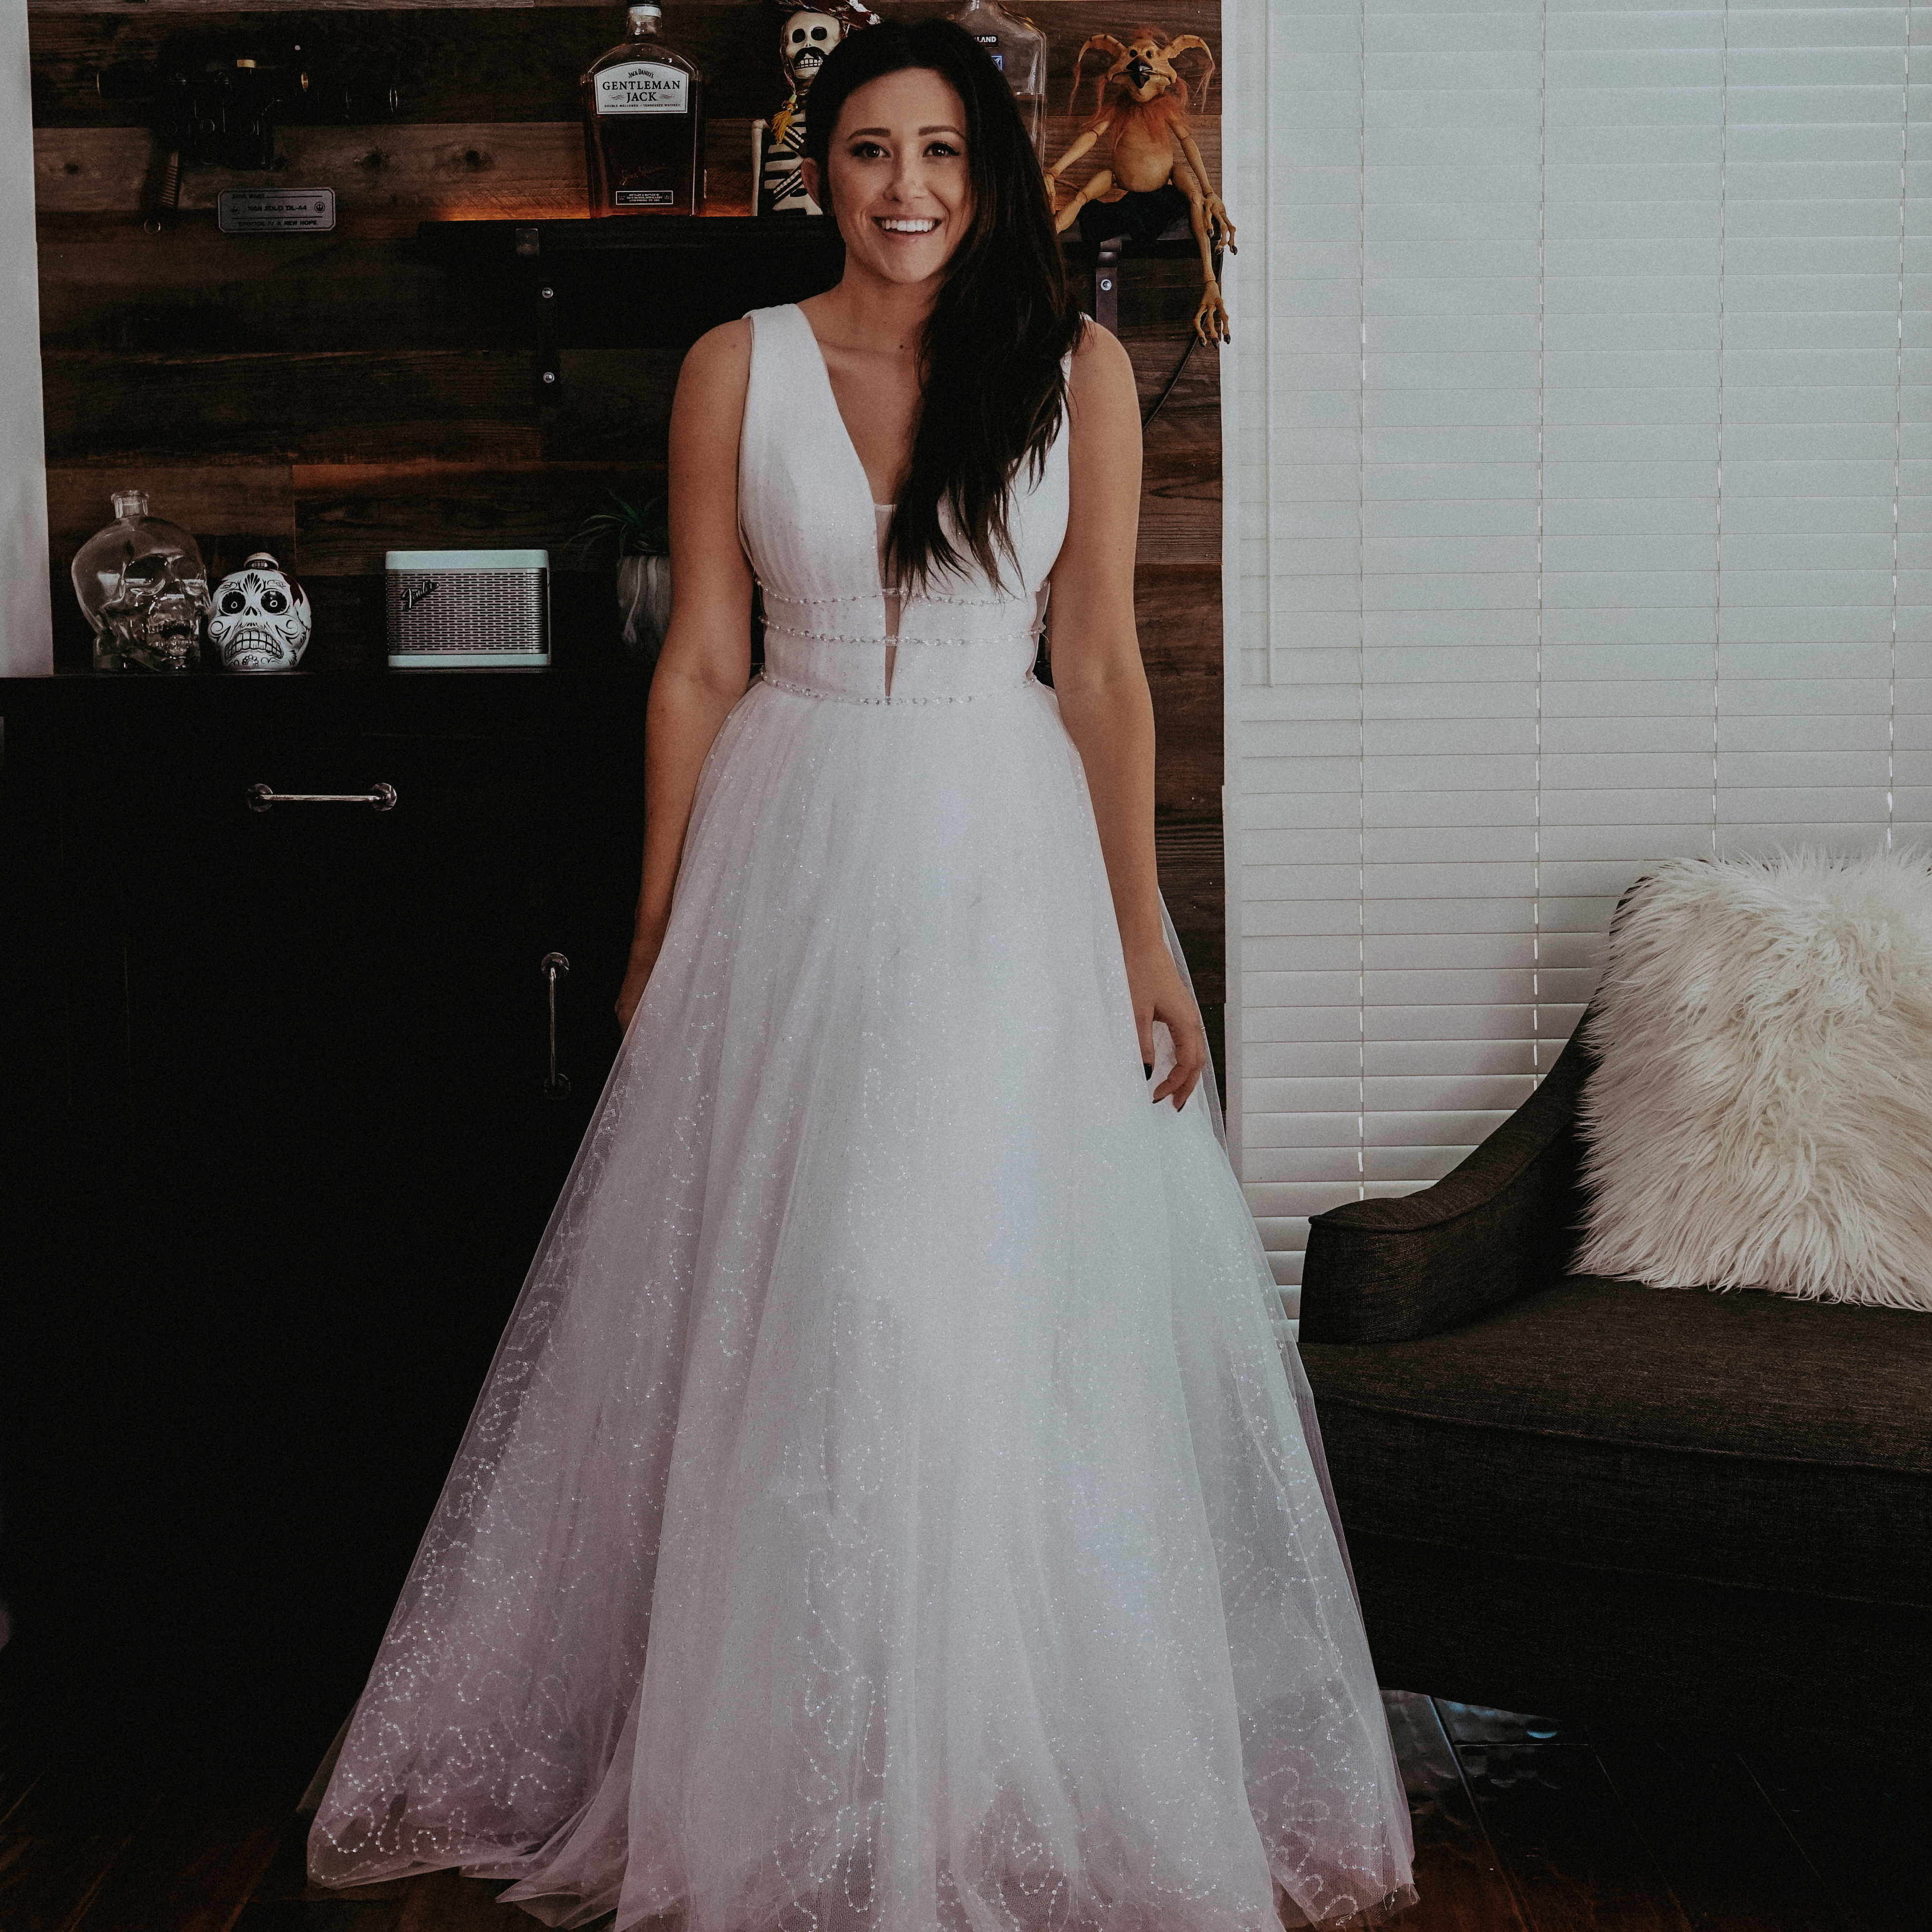 Inexpensive Wedding Dresses Under 100 on Amazon